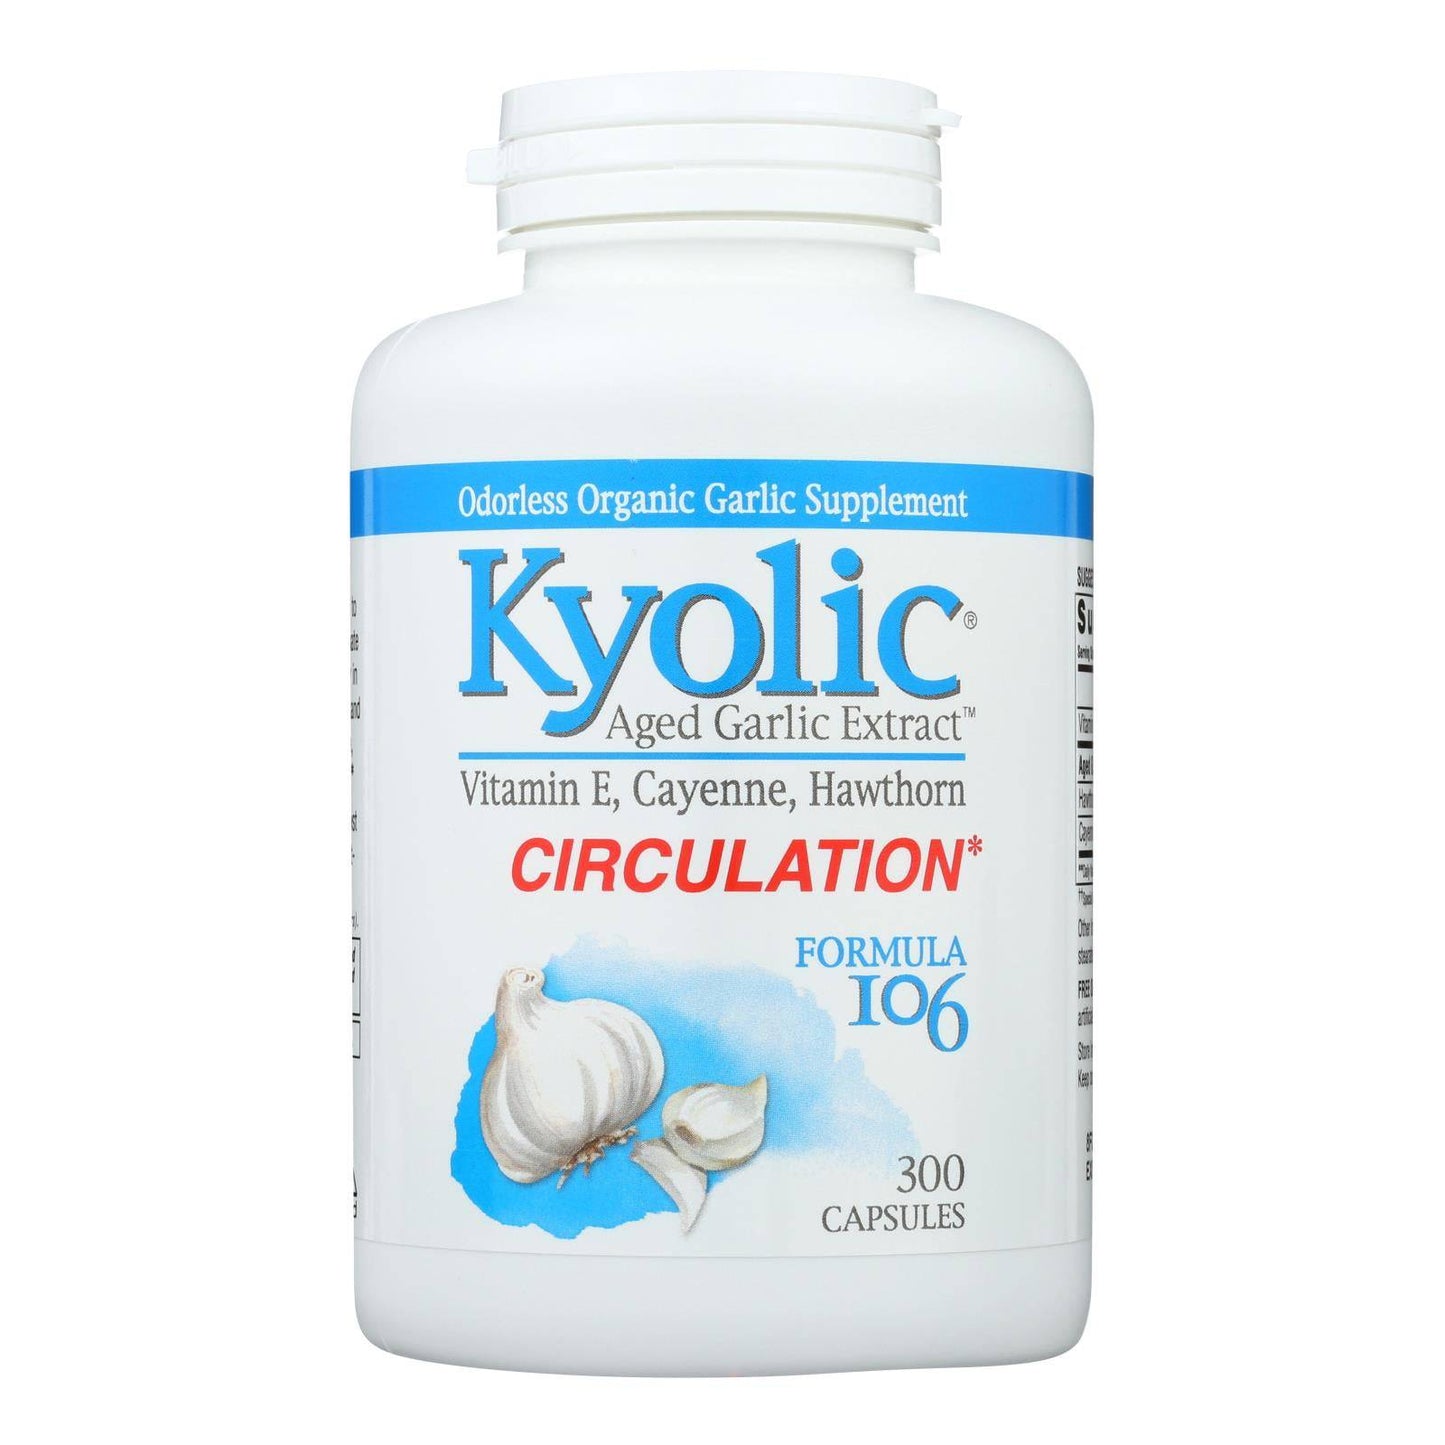 Kyolic - Aged Garlic Extract Circulation Formula 106 - 300 Capsules | OnlyNaturals.us